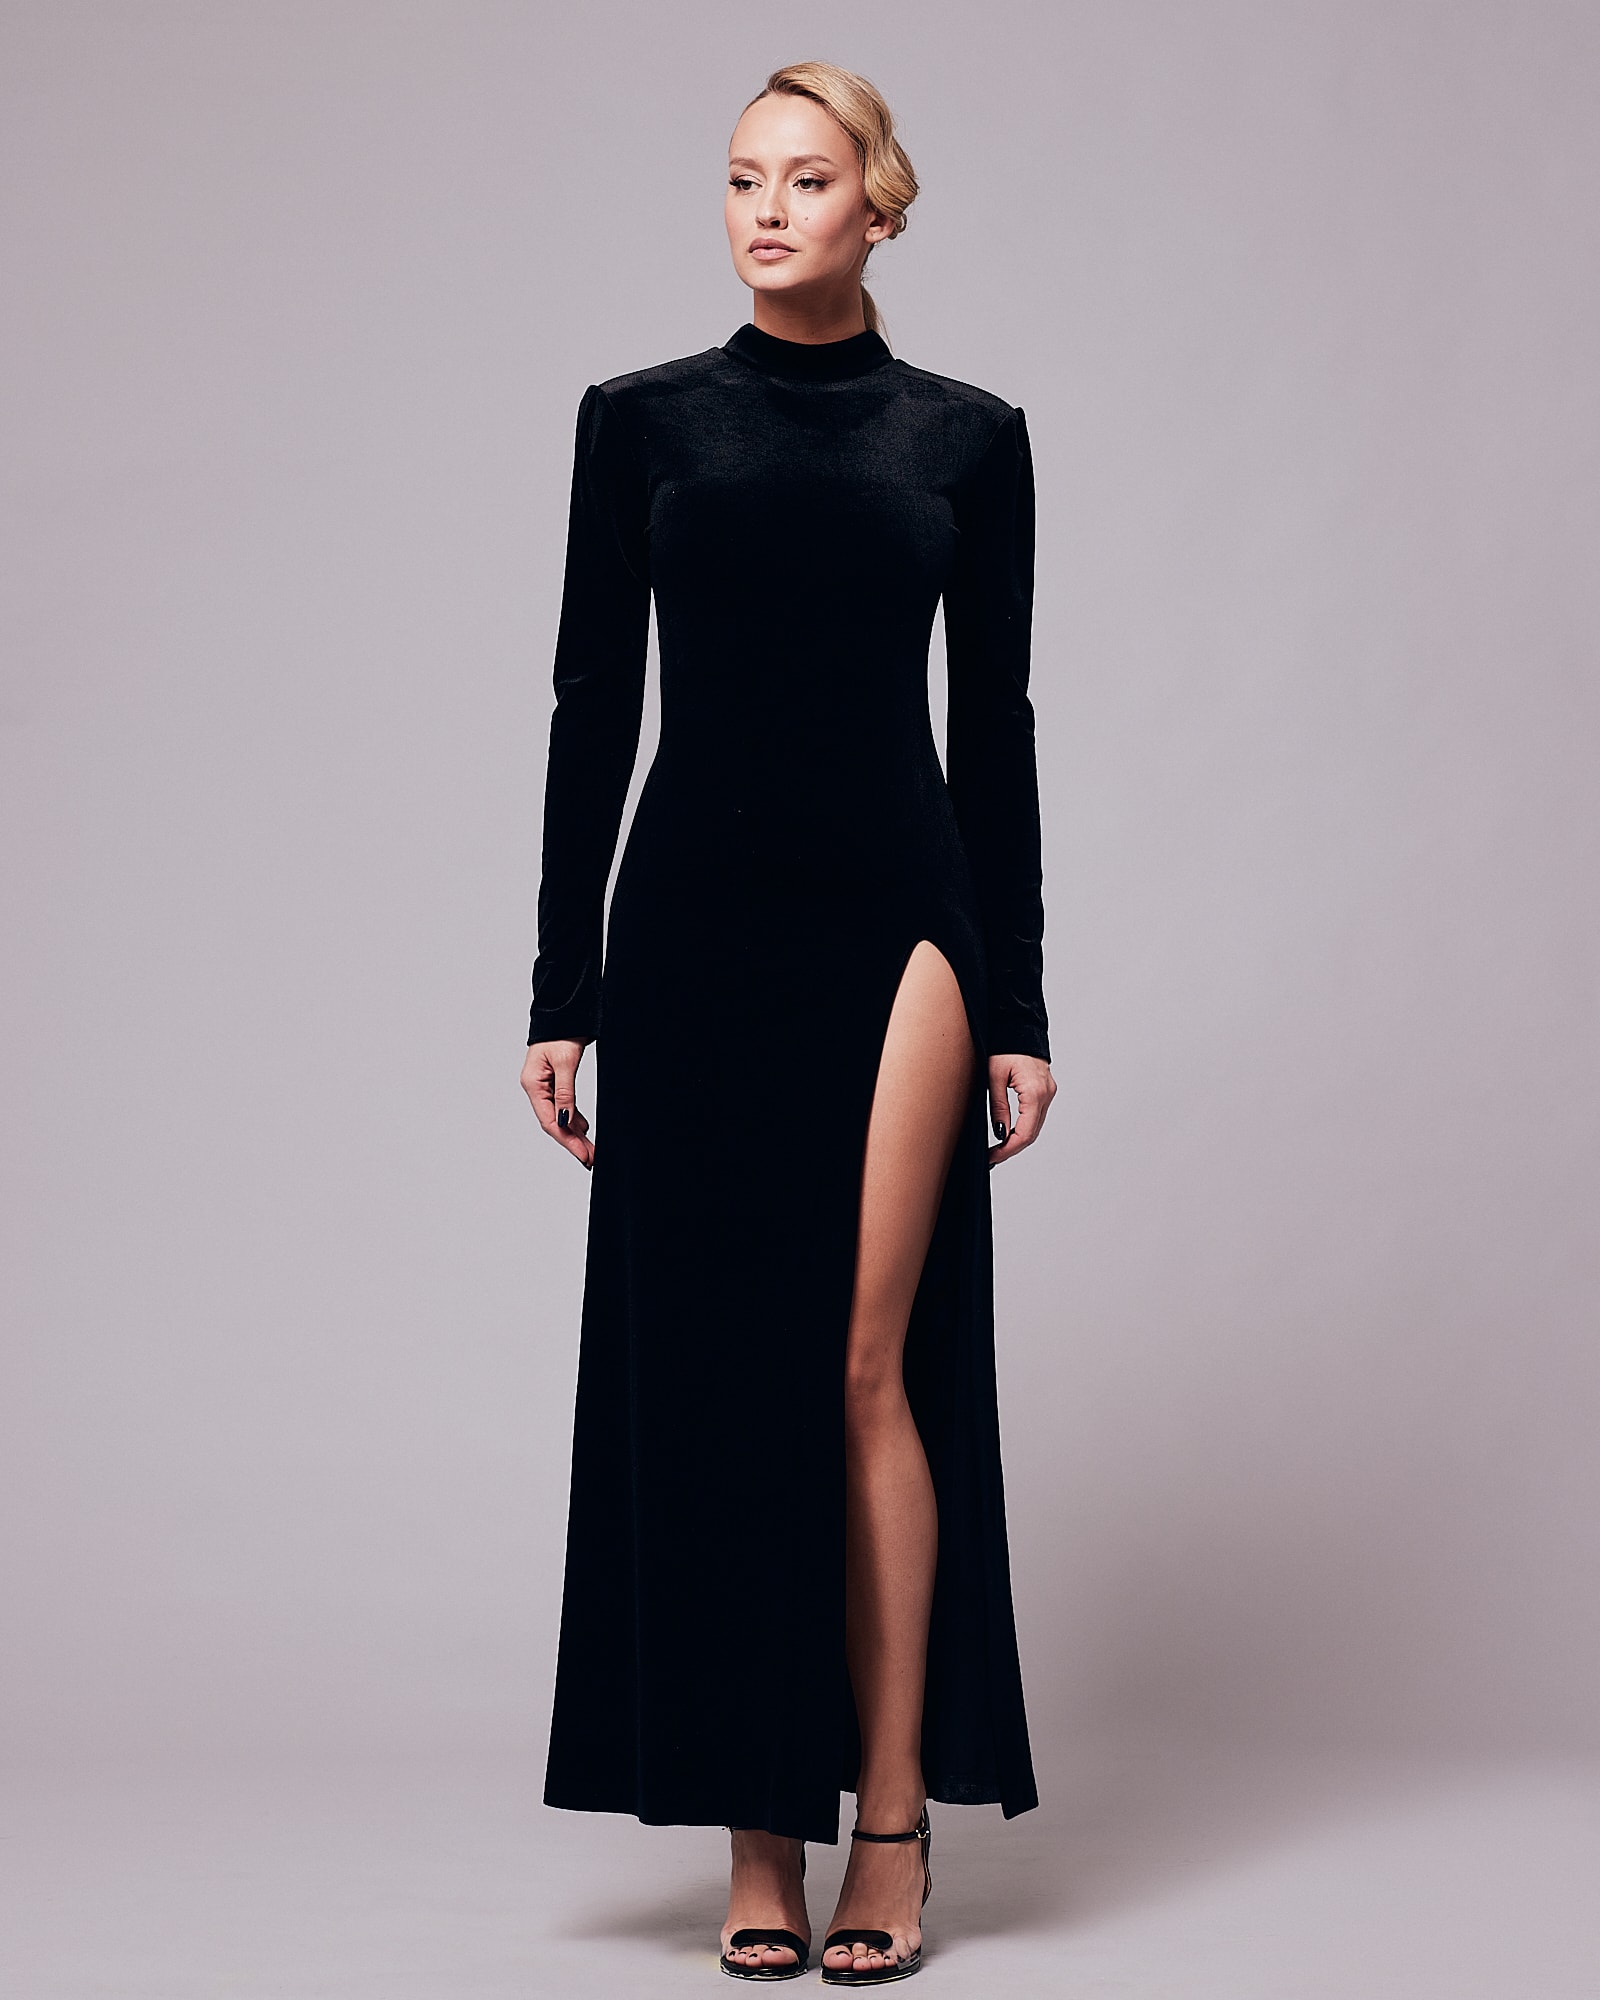 Black velvet cut dress